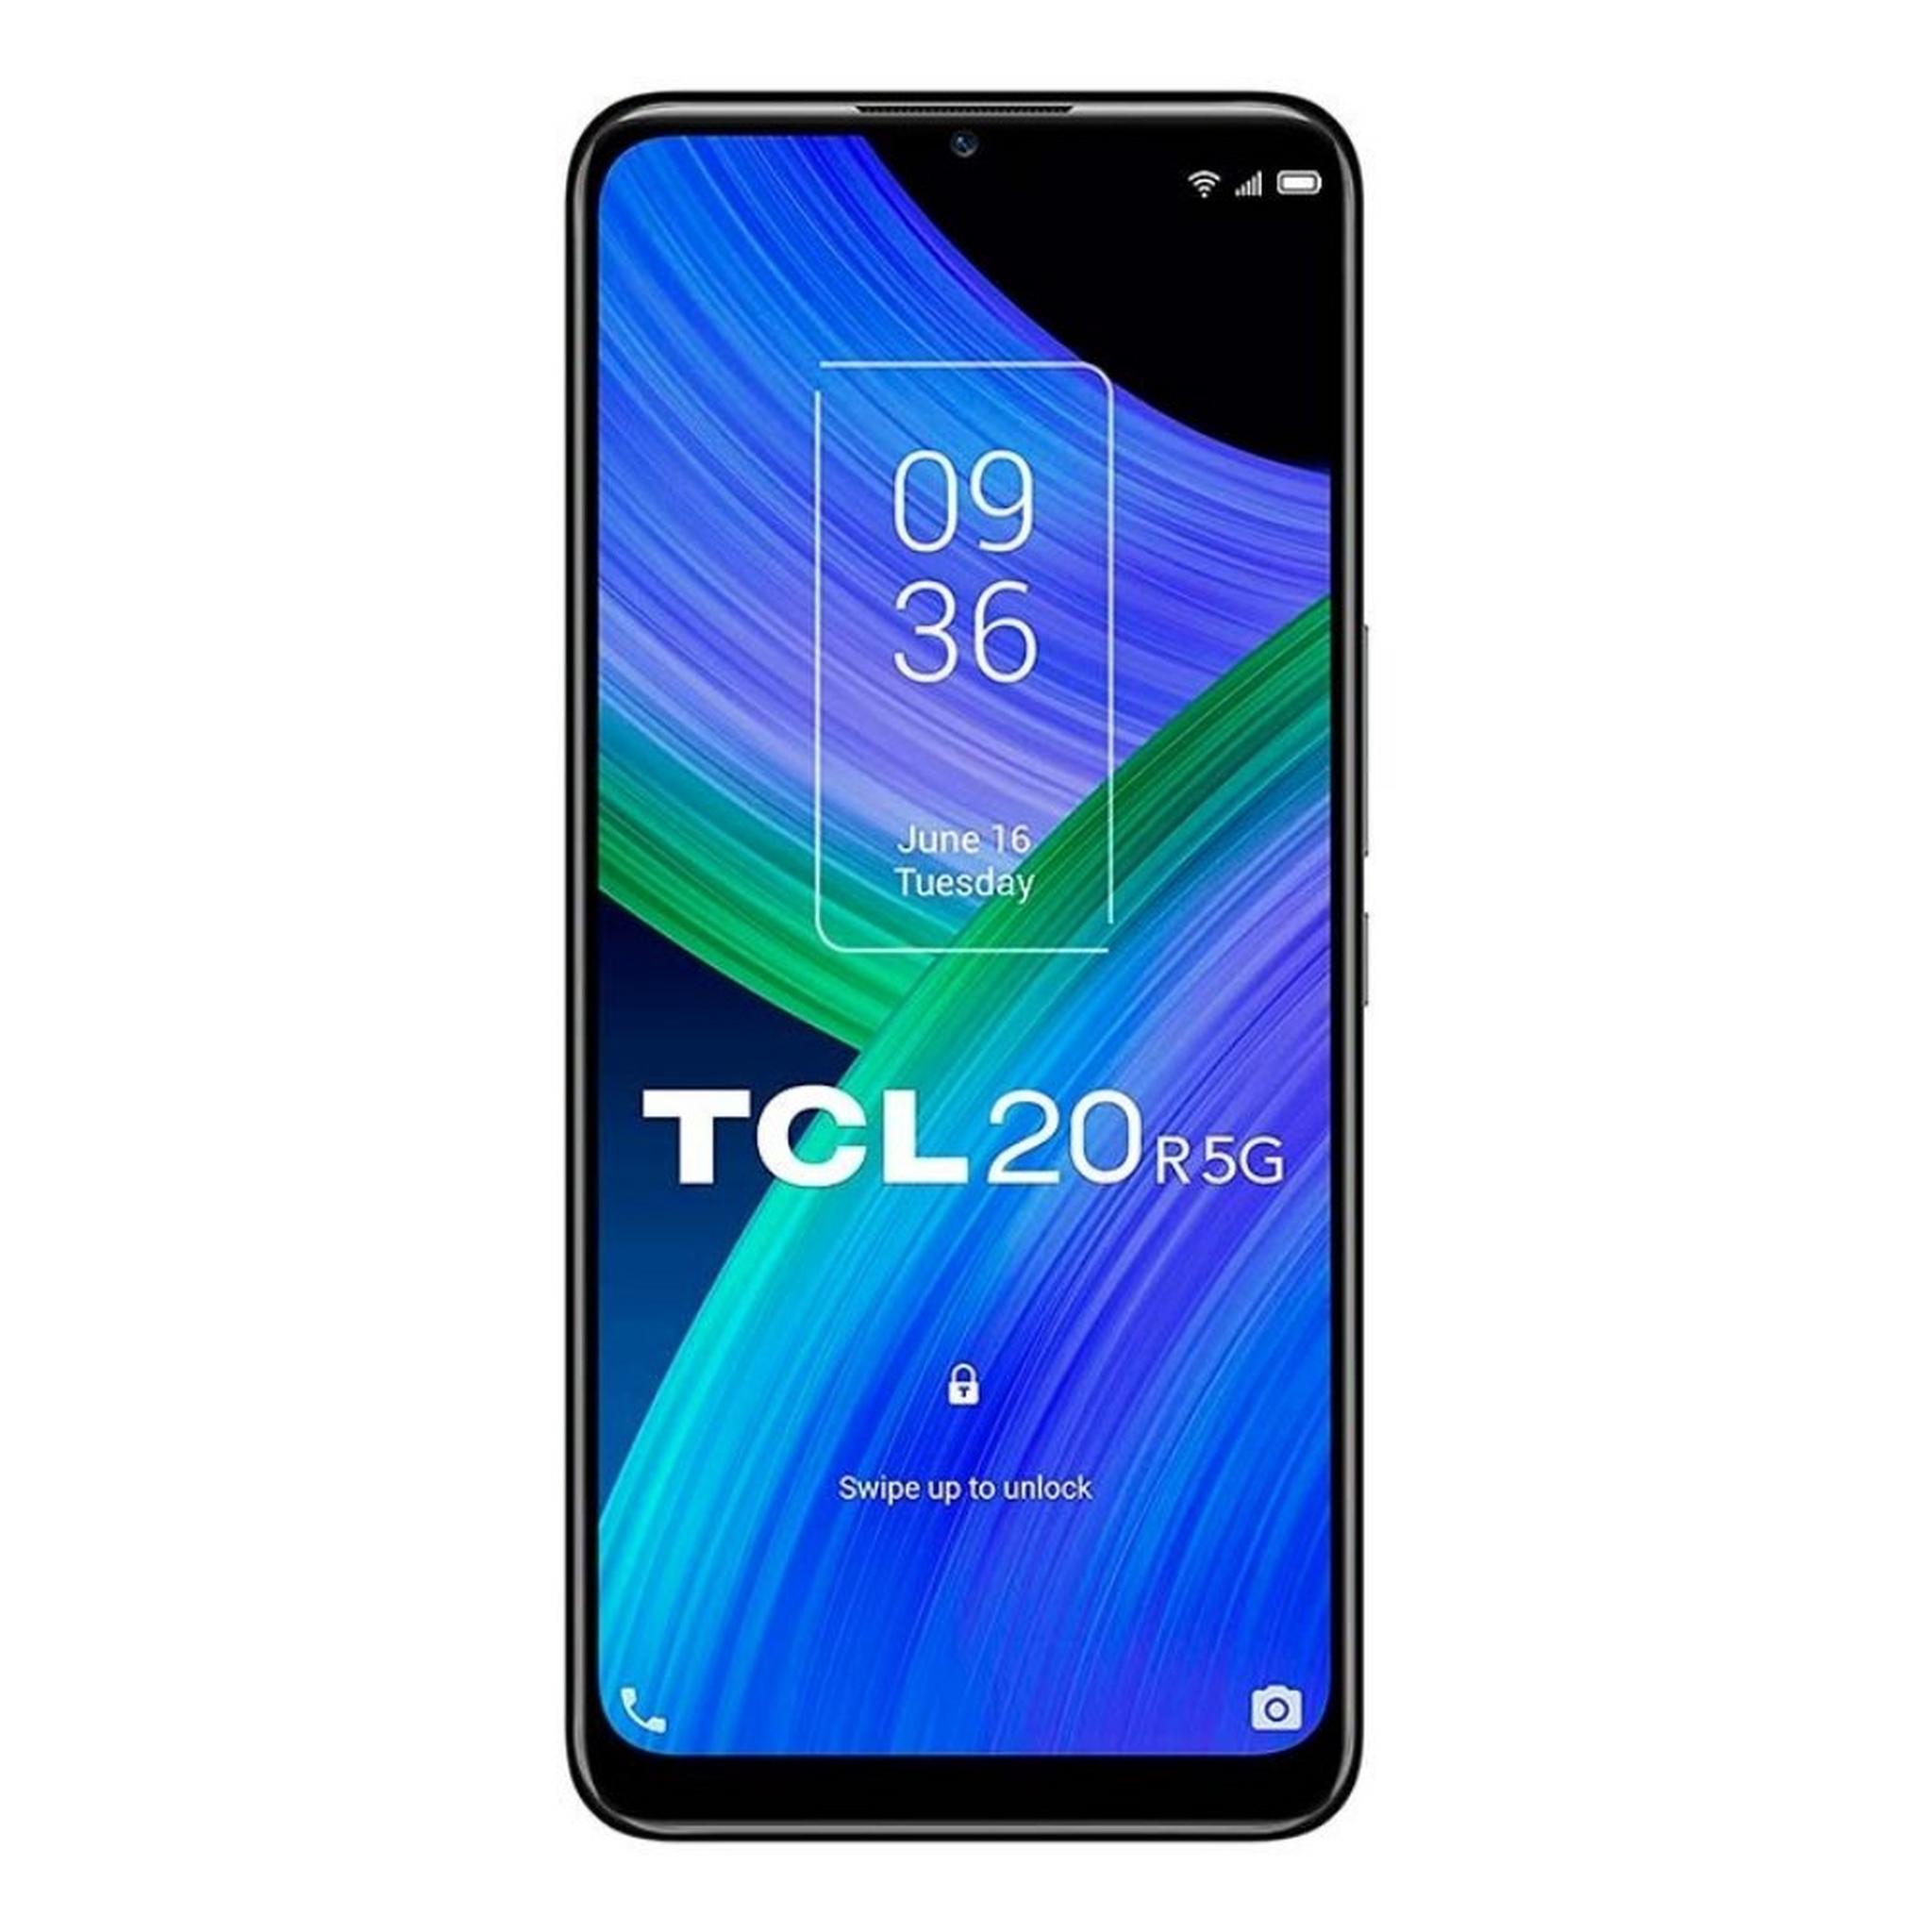 TCL 20 R 128GB 5G Phone - Blue